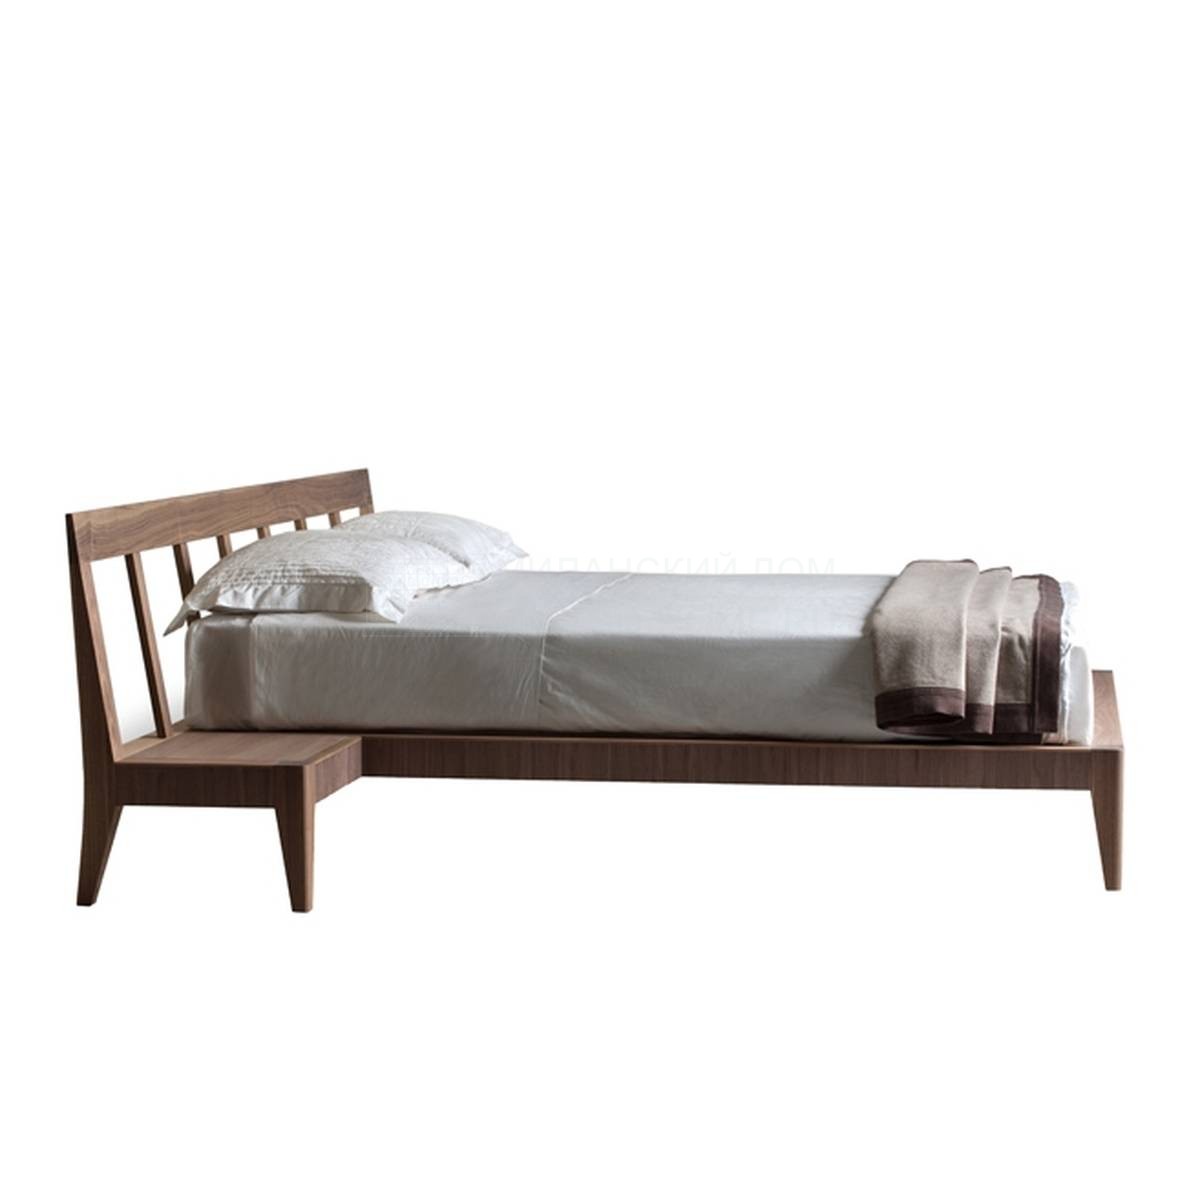 Кровать с деревянным изголовьем Magic Dream art.2889/N из Италии фабрики MORELATO